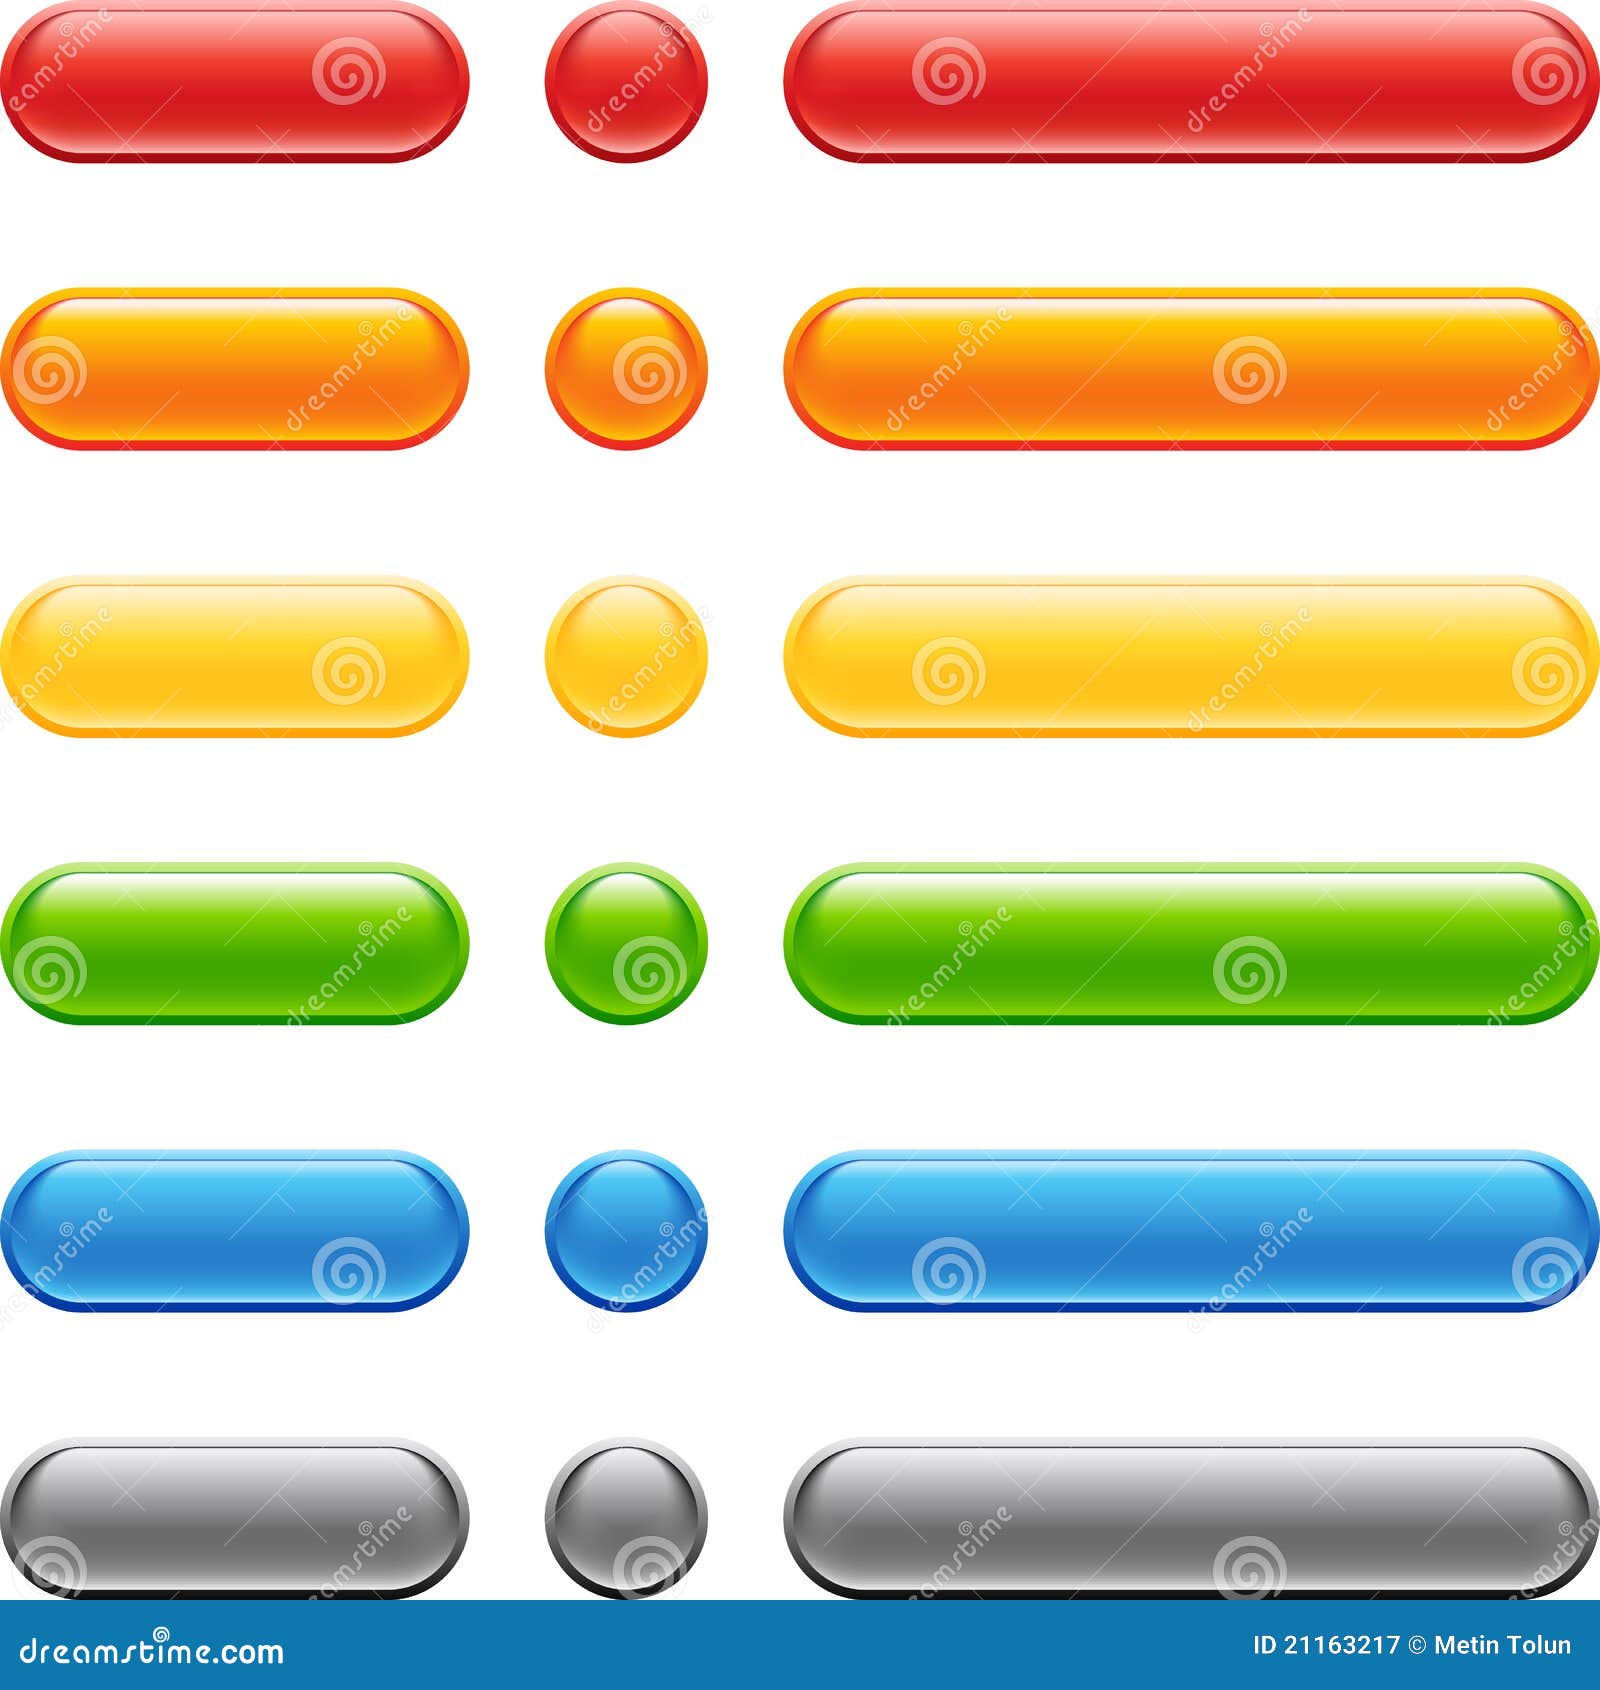 colored web button set